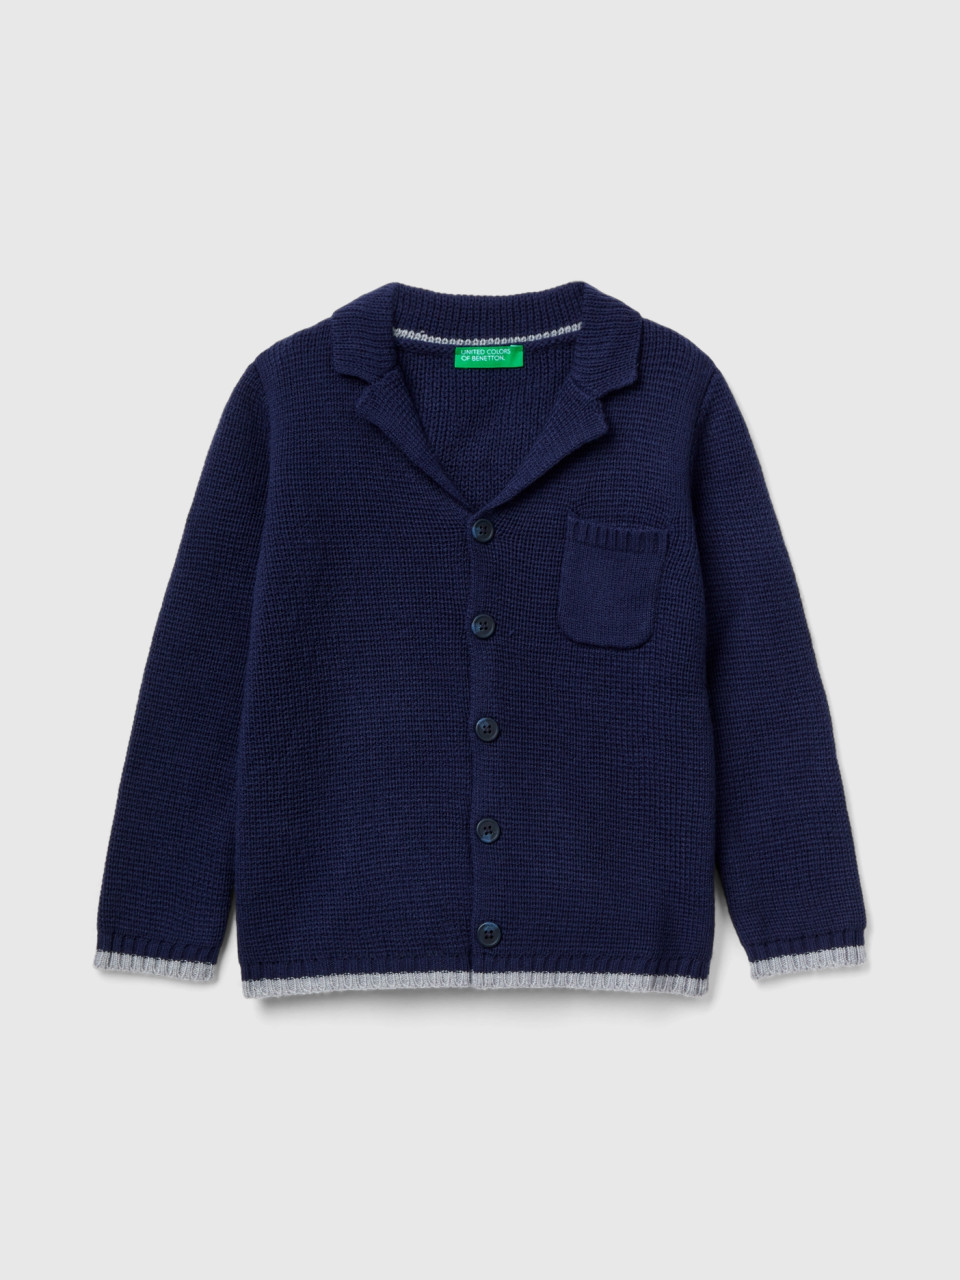 Benetton, Knit Blazer With Pocket, Dark Blue, Kids